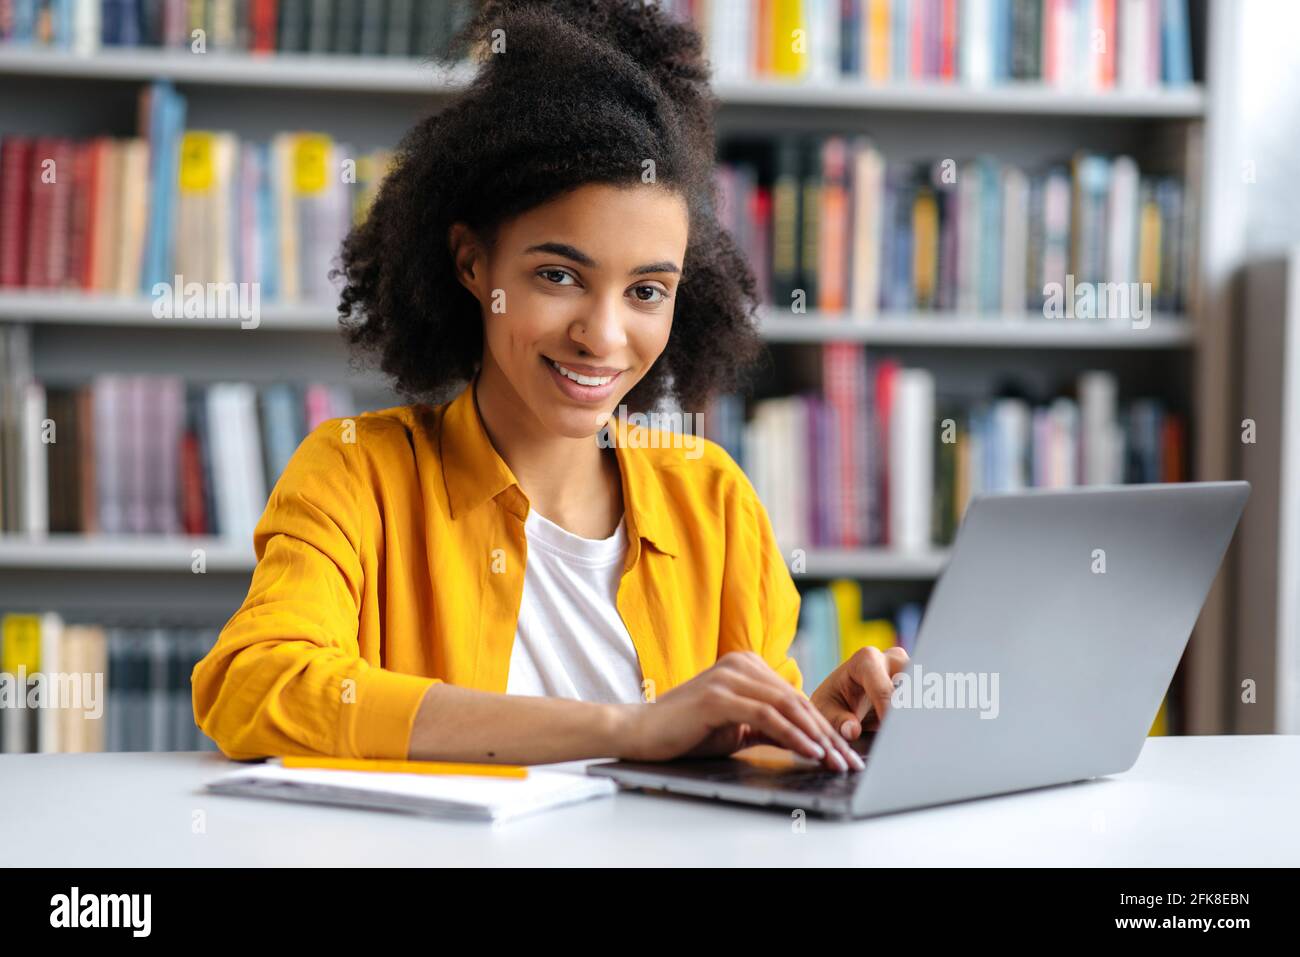 Joven adolescente afroamericana, de moda vestida, estudiante sentada en la biblioteca del campus en el ordenador portátil, preparándose para el examen, buscando información, mirando la cámara, sonriendo Foto de stock